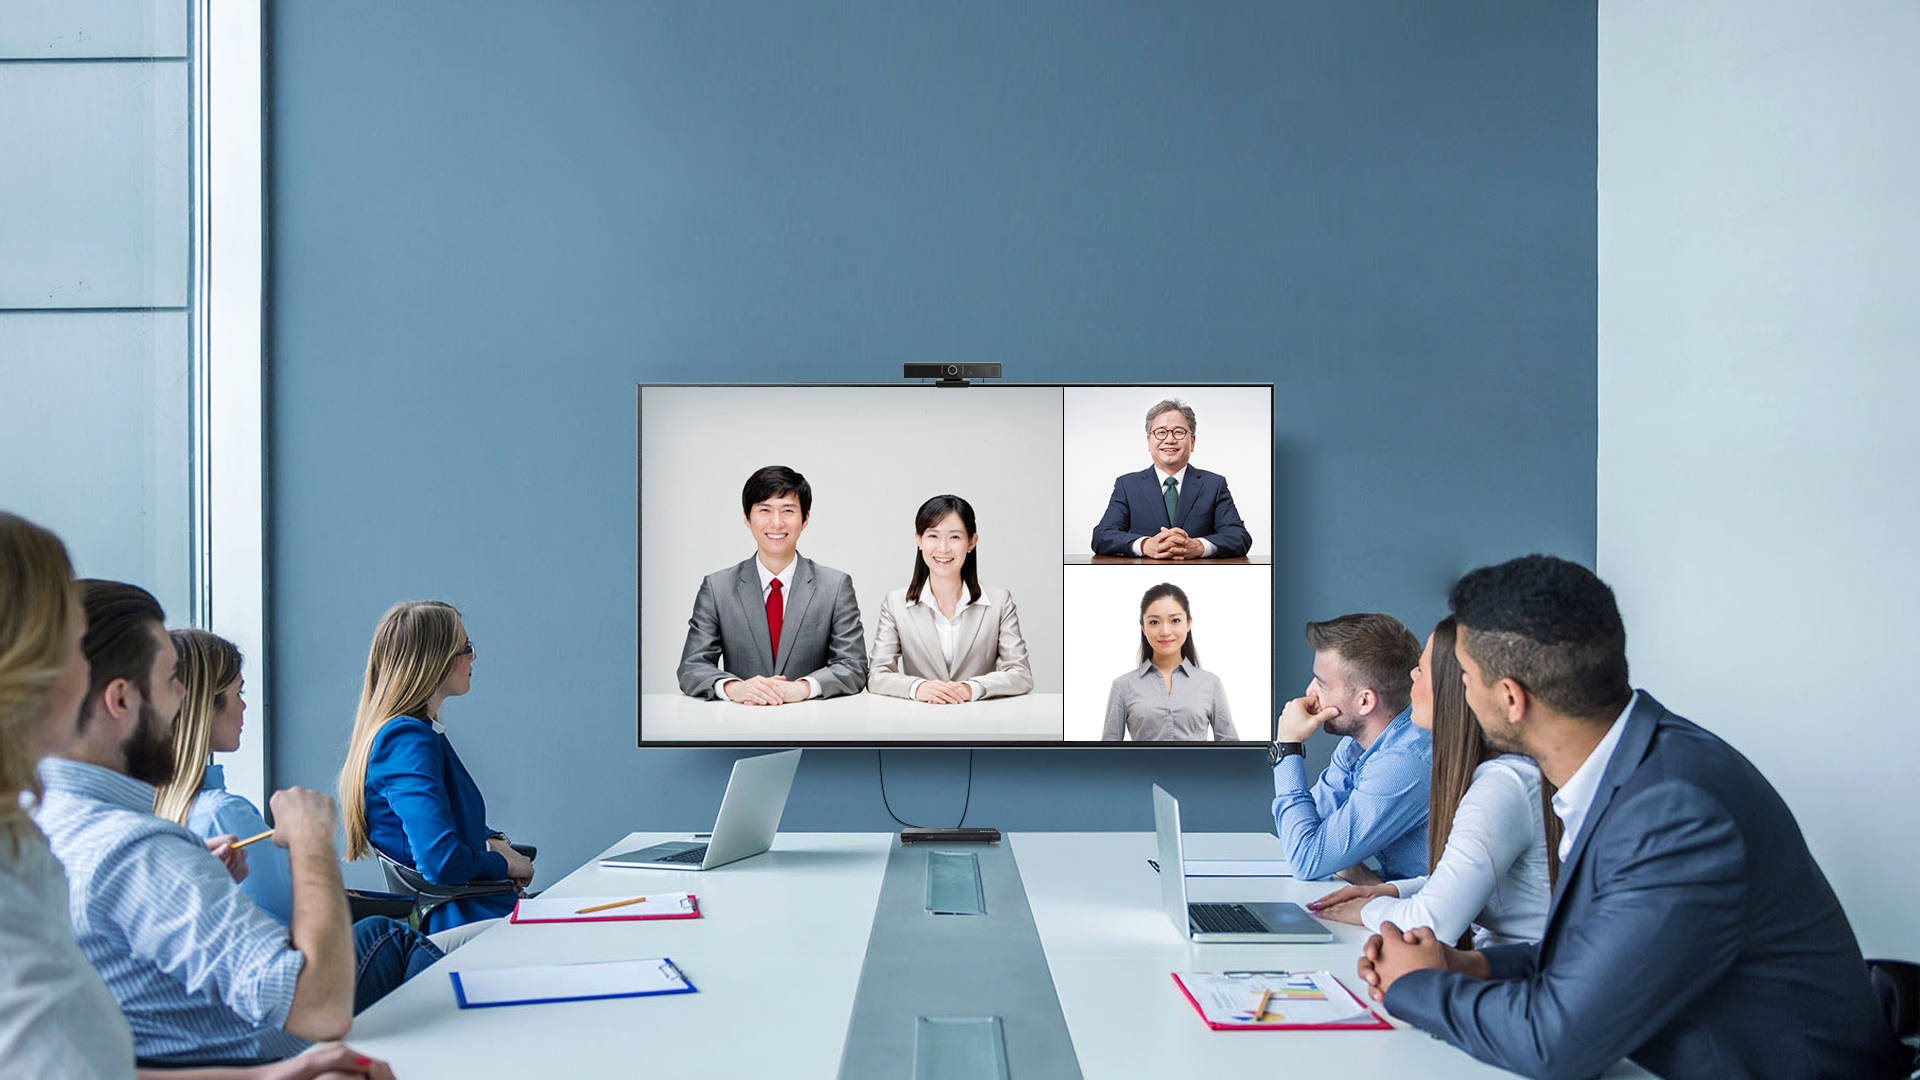 会议室内几位专注的职员正通过大屏幕视频会议系统与远程的合作伙伴进行交流。环境现代，氛围专业。